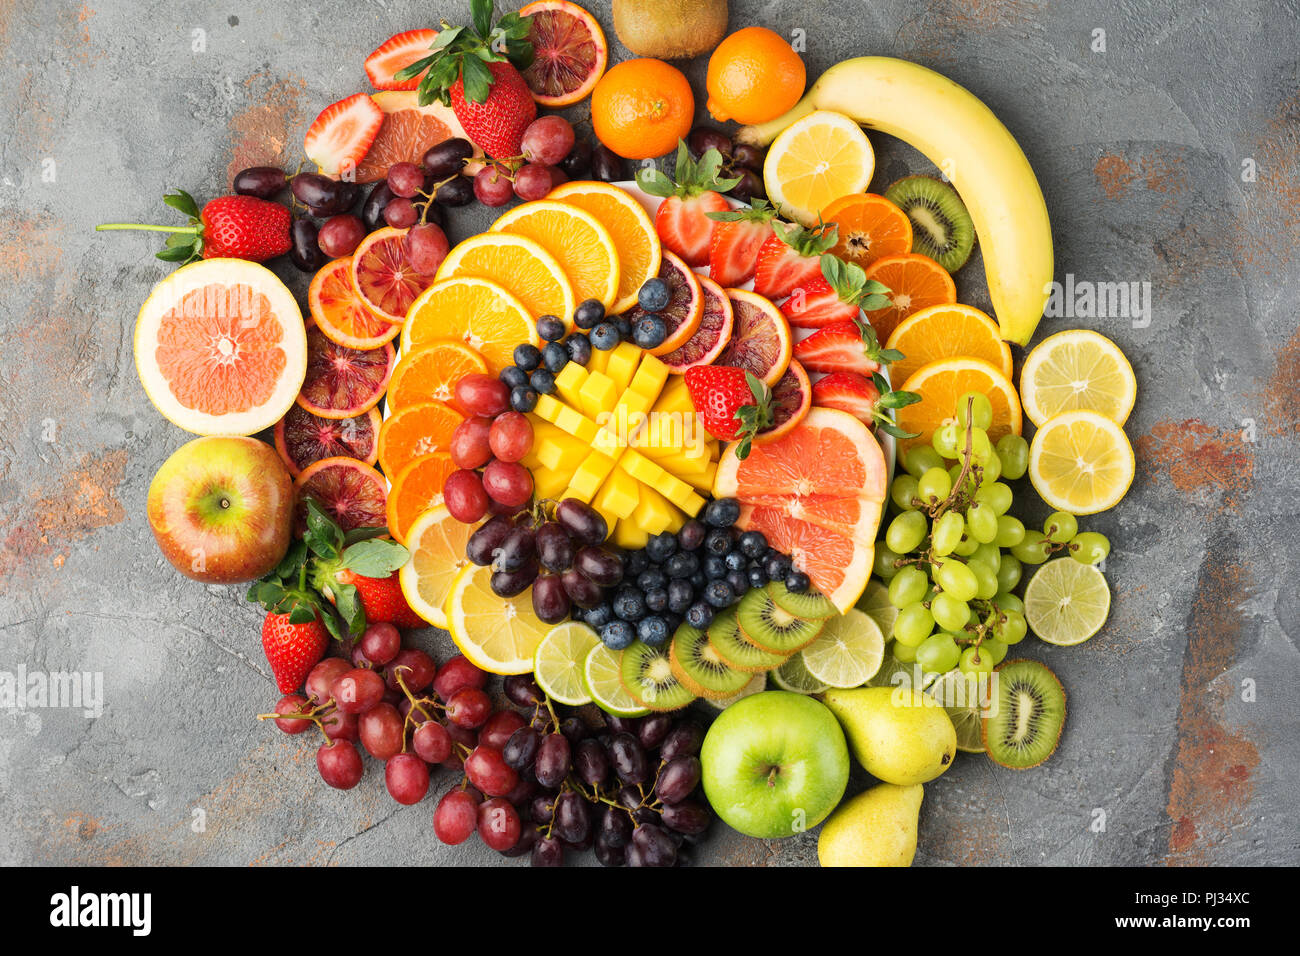 Les fruits sains en arrière-plan des couleurs arc-en-ciel oranges pommes poires raisins fraises kiwis mangues sur la table de béton gris, vue du dessus, copiez l'espace, selective focus Banque D'Images